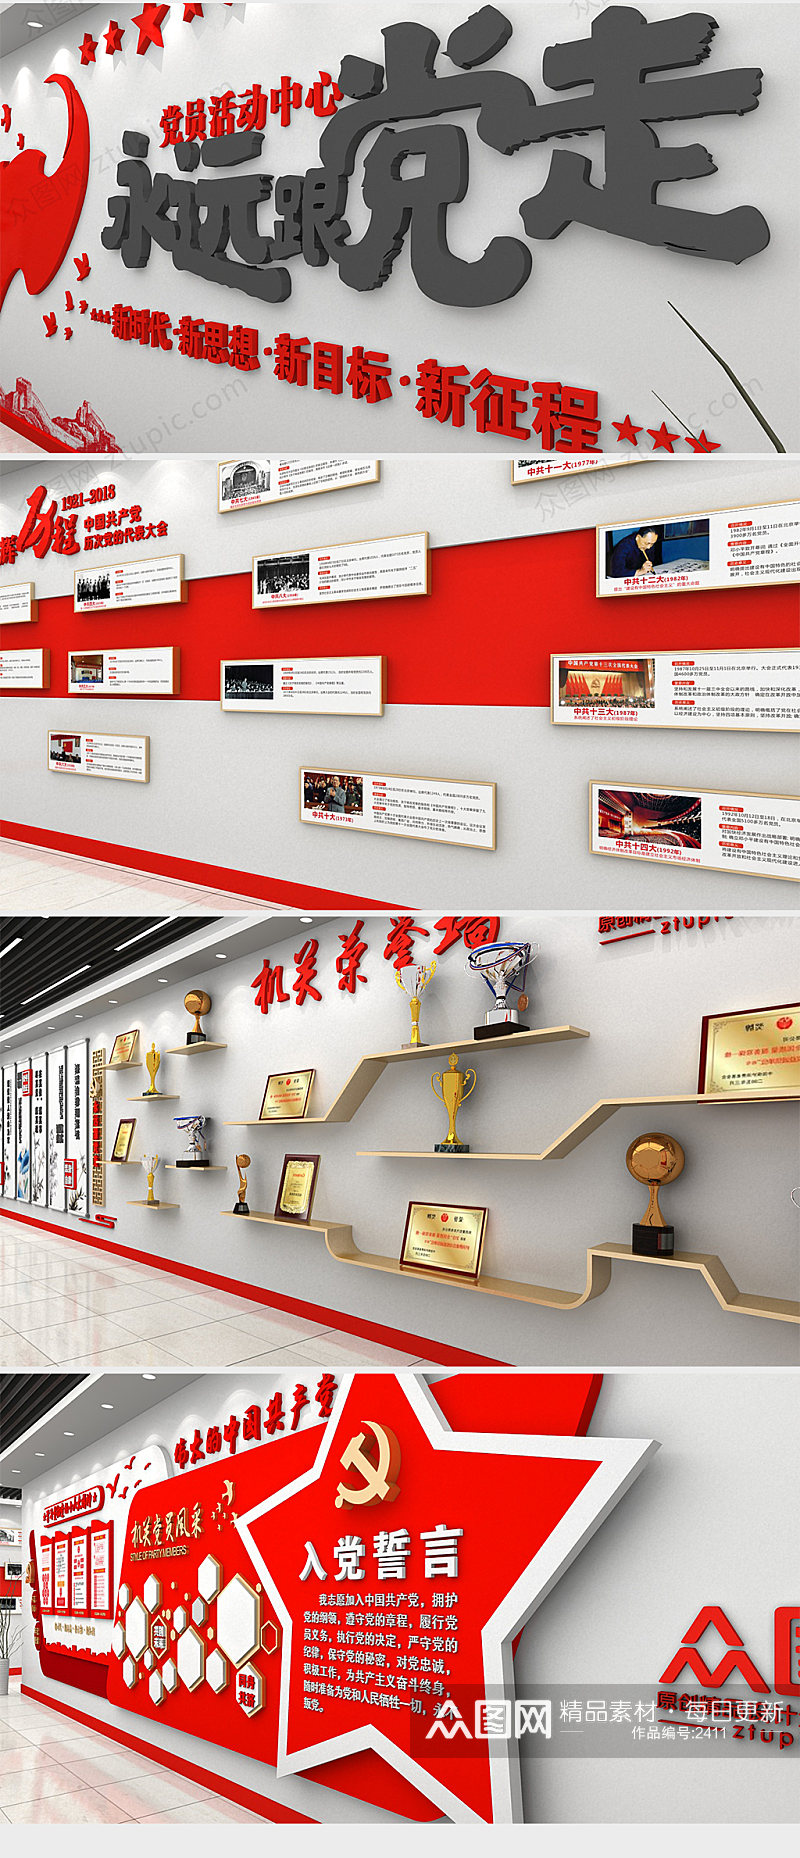 红色整套党建活动室展馆设计 红色文化教育展馆素材